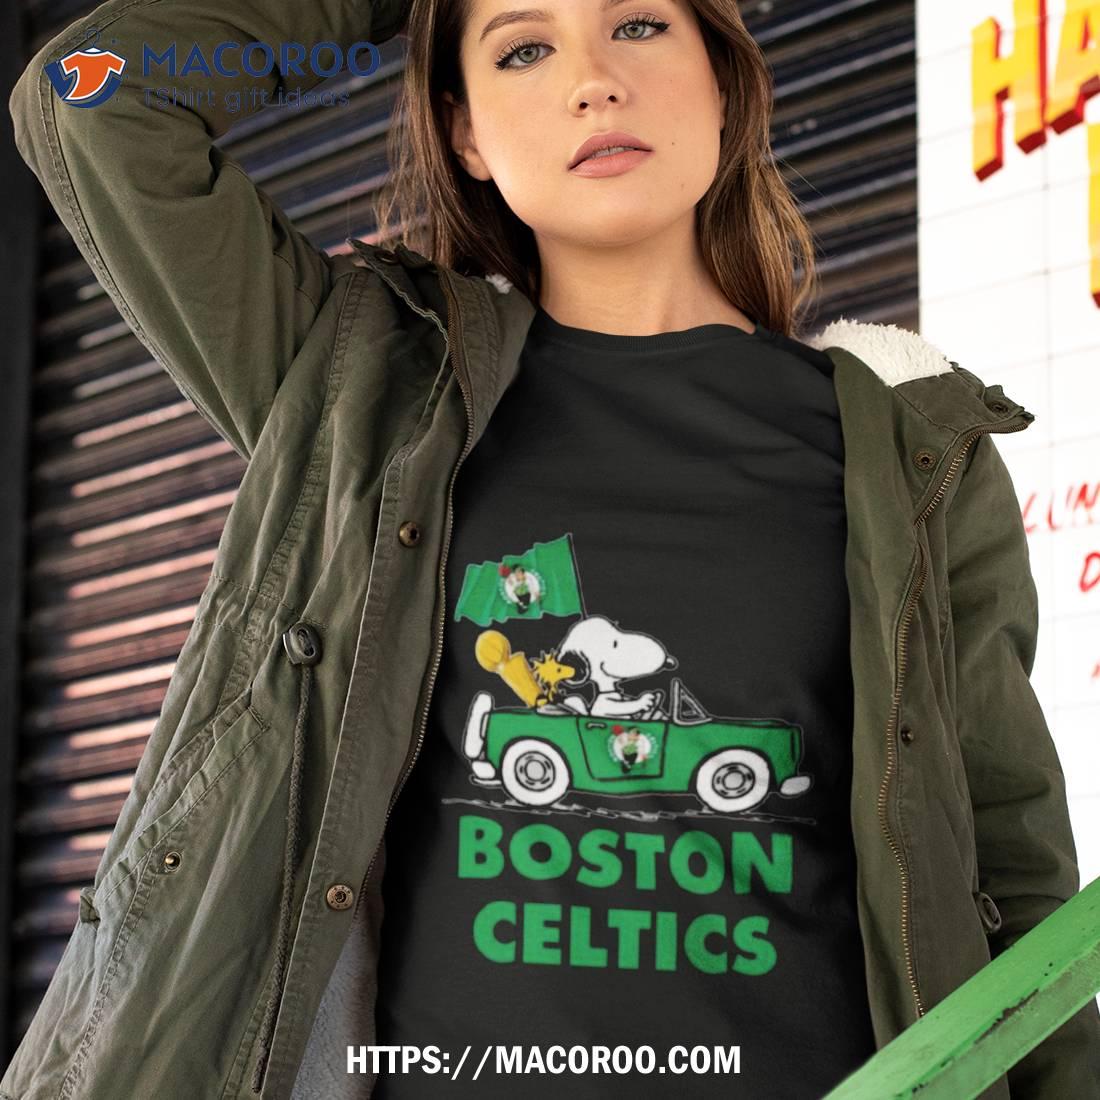 Boston Celtics Basketball Snoopy Celtics Shirt